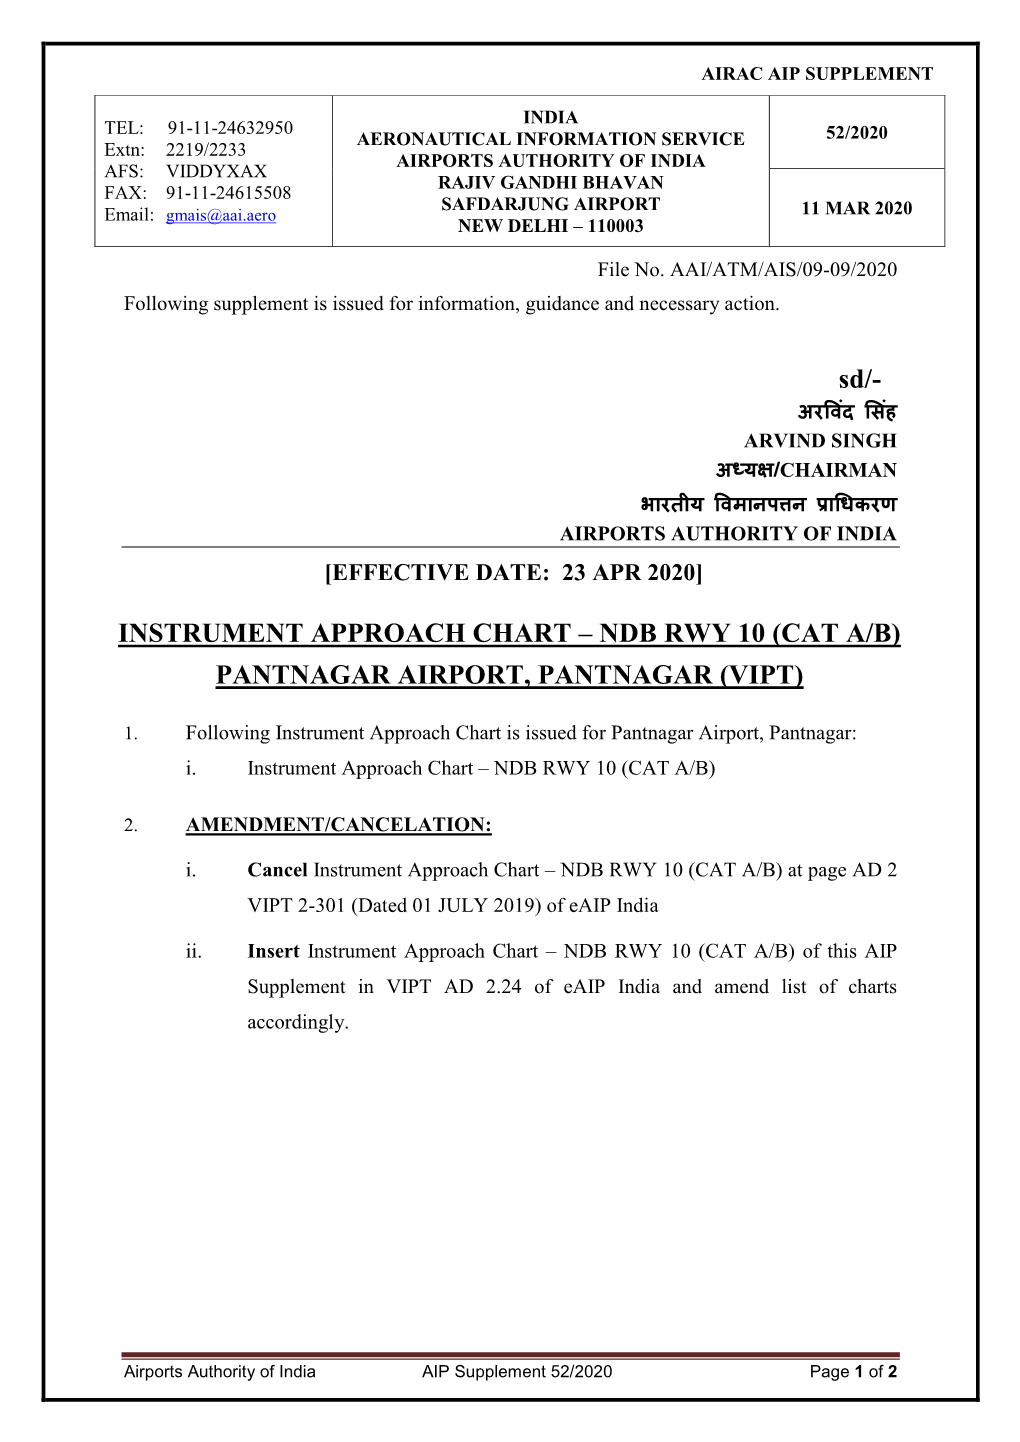 Instrument Approach Chart – Ndb Rwy 10 (Cat A/B) Pantnagar Airport, Pantnagar (Vipt)